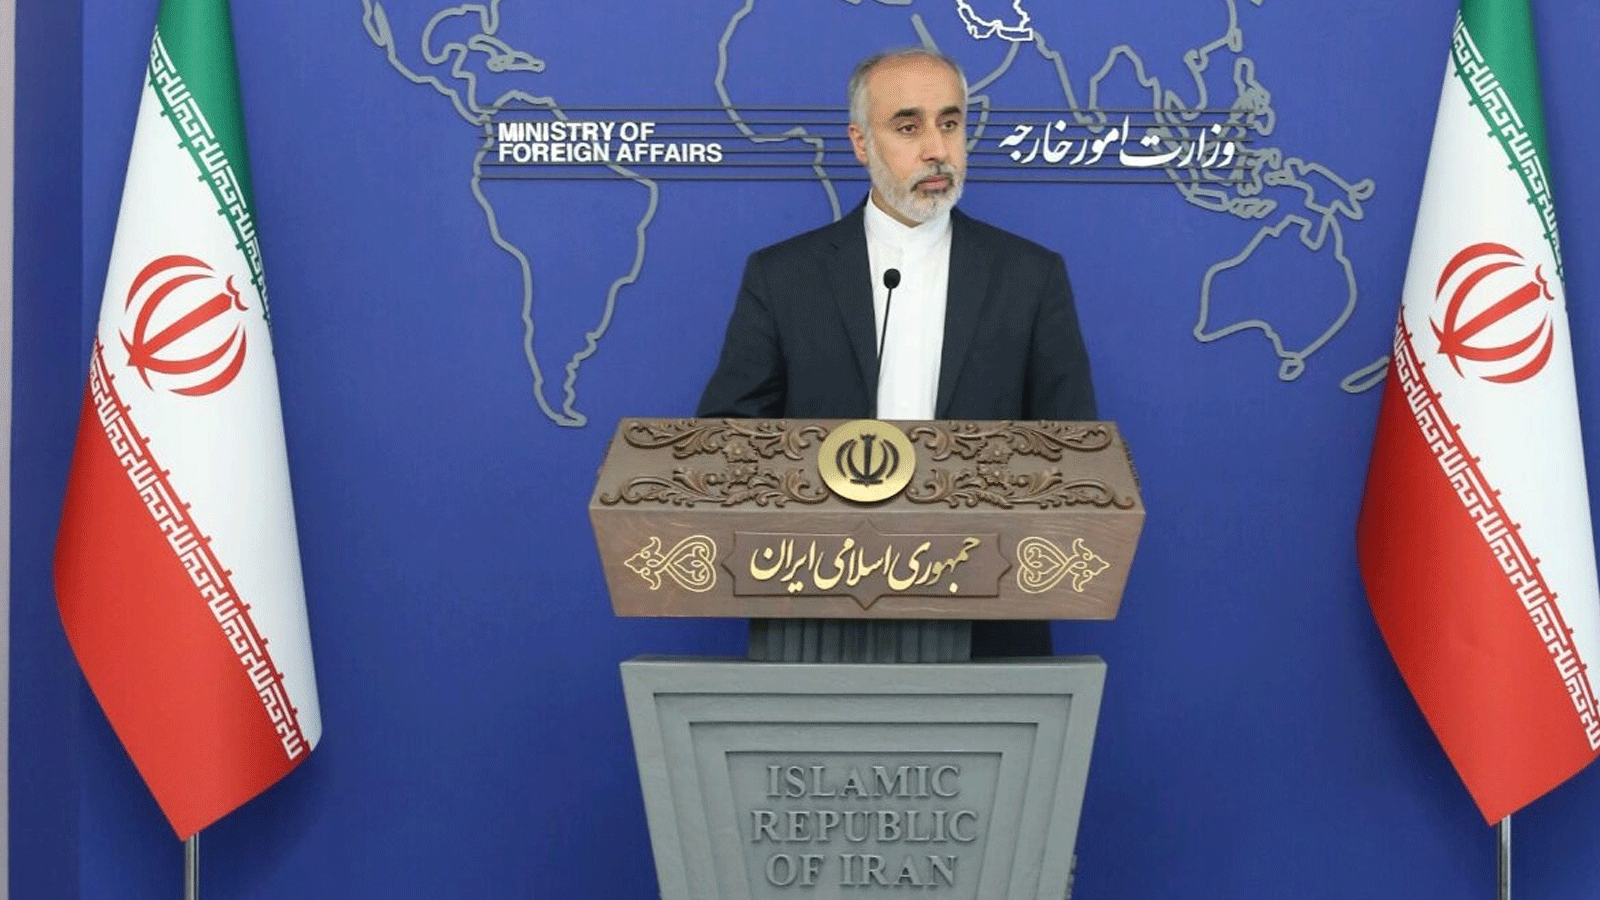 المتحدث باسم وزارة الخارجية الايرانية خلال مؤتمره الصحافي في طهران الاثنين 5 كانون الأول\ ديسمبر 2022 (الخارجية)